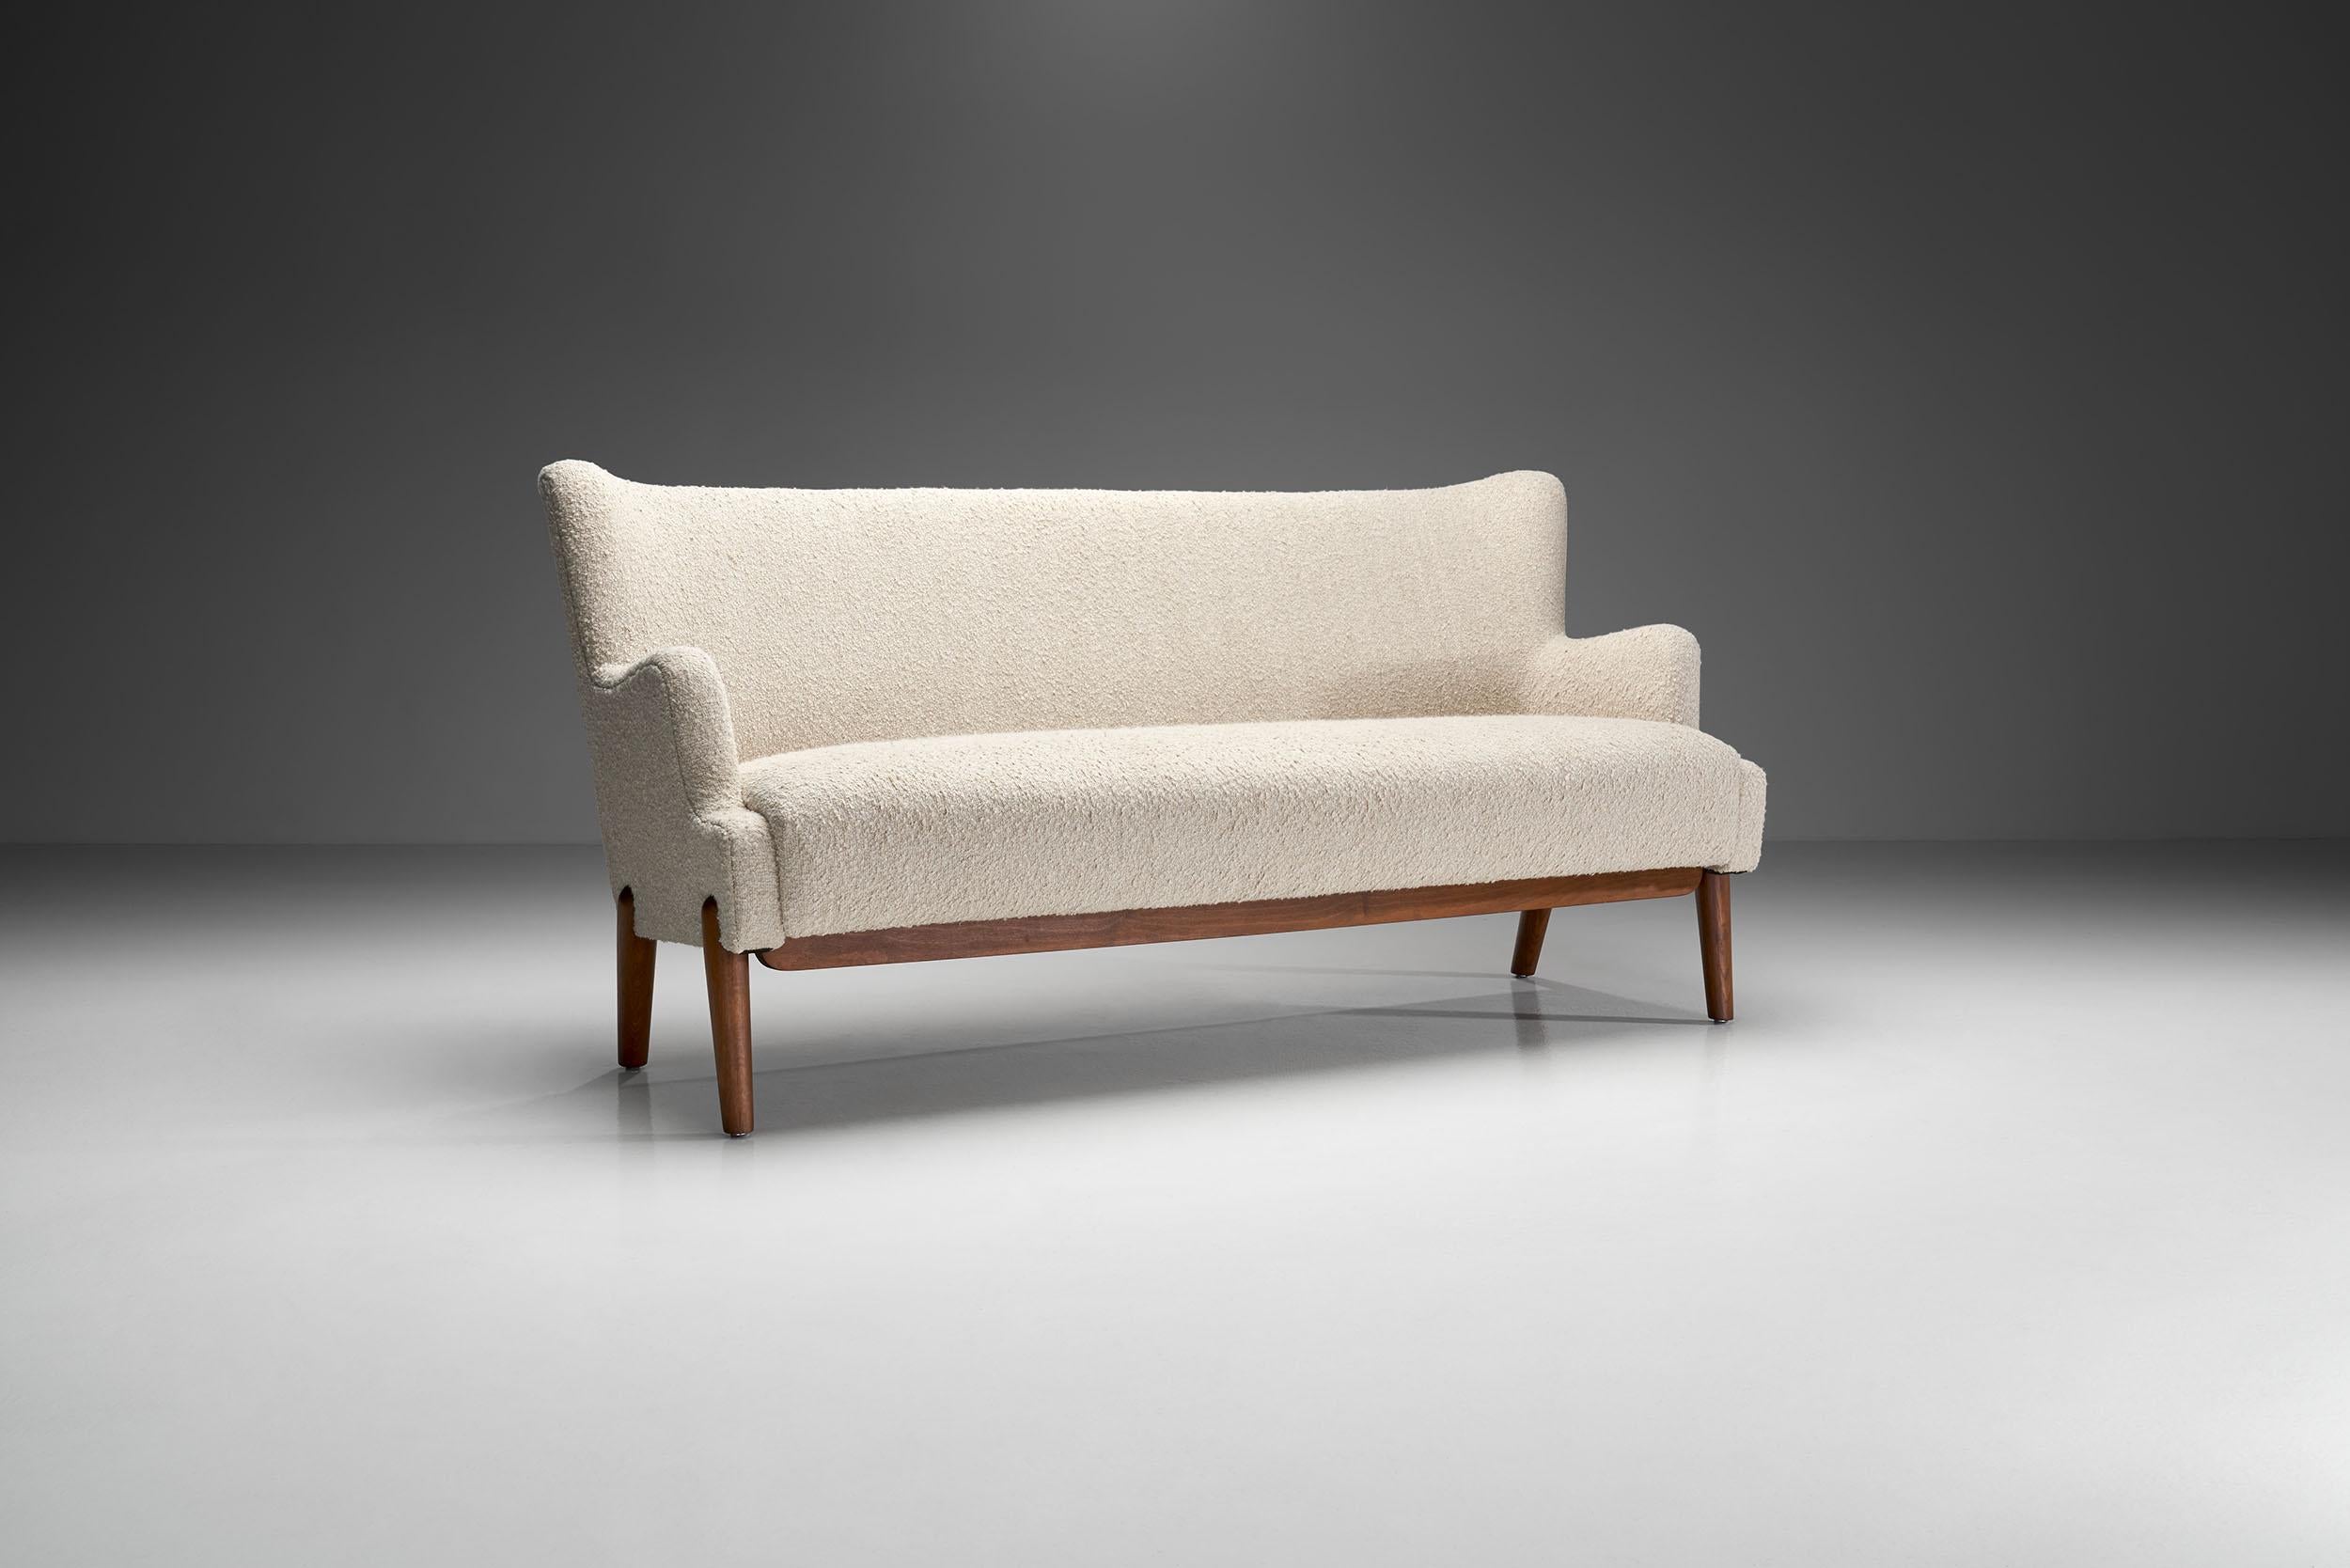 Ce canapé trois places présente les meilleures caractéristiques du design moderne danois du milieu du siècle. Son confort et ses éléments de design délicats font de ce fauteuil trois places l'œuvre la plus convoitée d'Eva et Nils Koppel.

Le